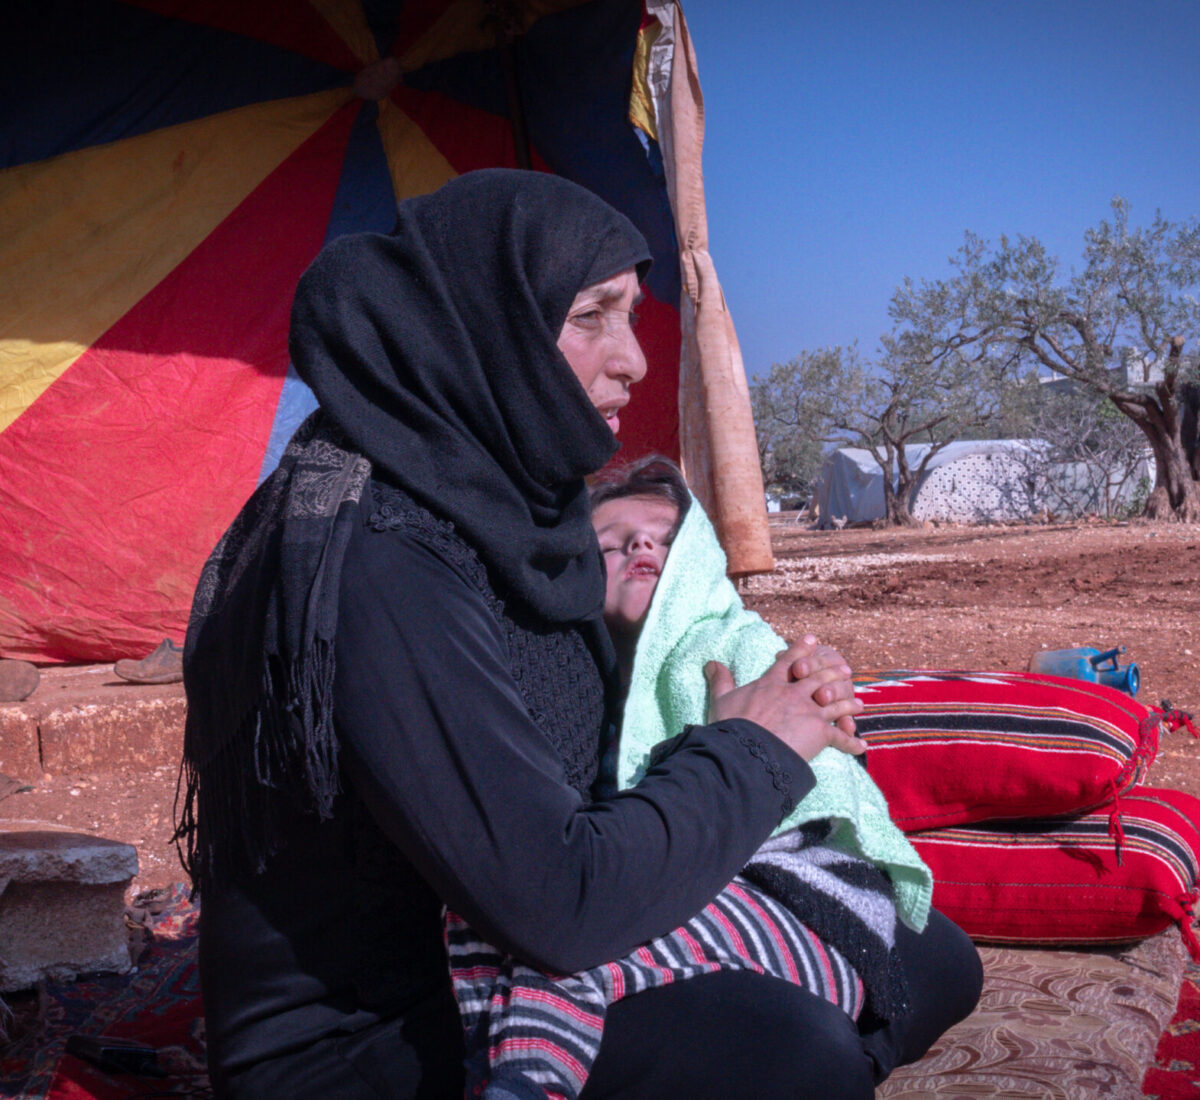  "Quando ho perso la mia casa e mio marito, mi sono sentito come se avessi perso tutto. Ci è rimasta solo questa tenda." - Umm Anwar